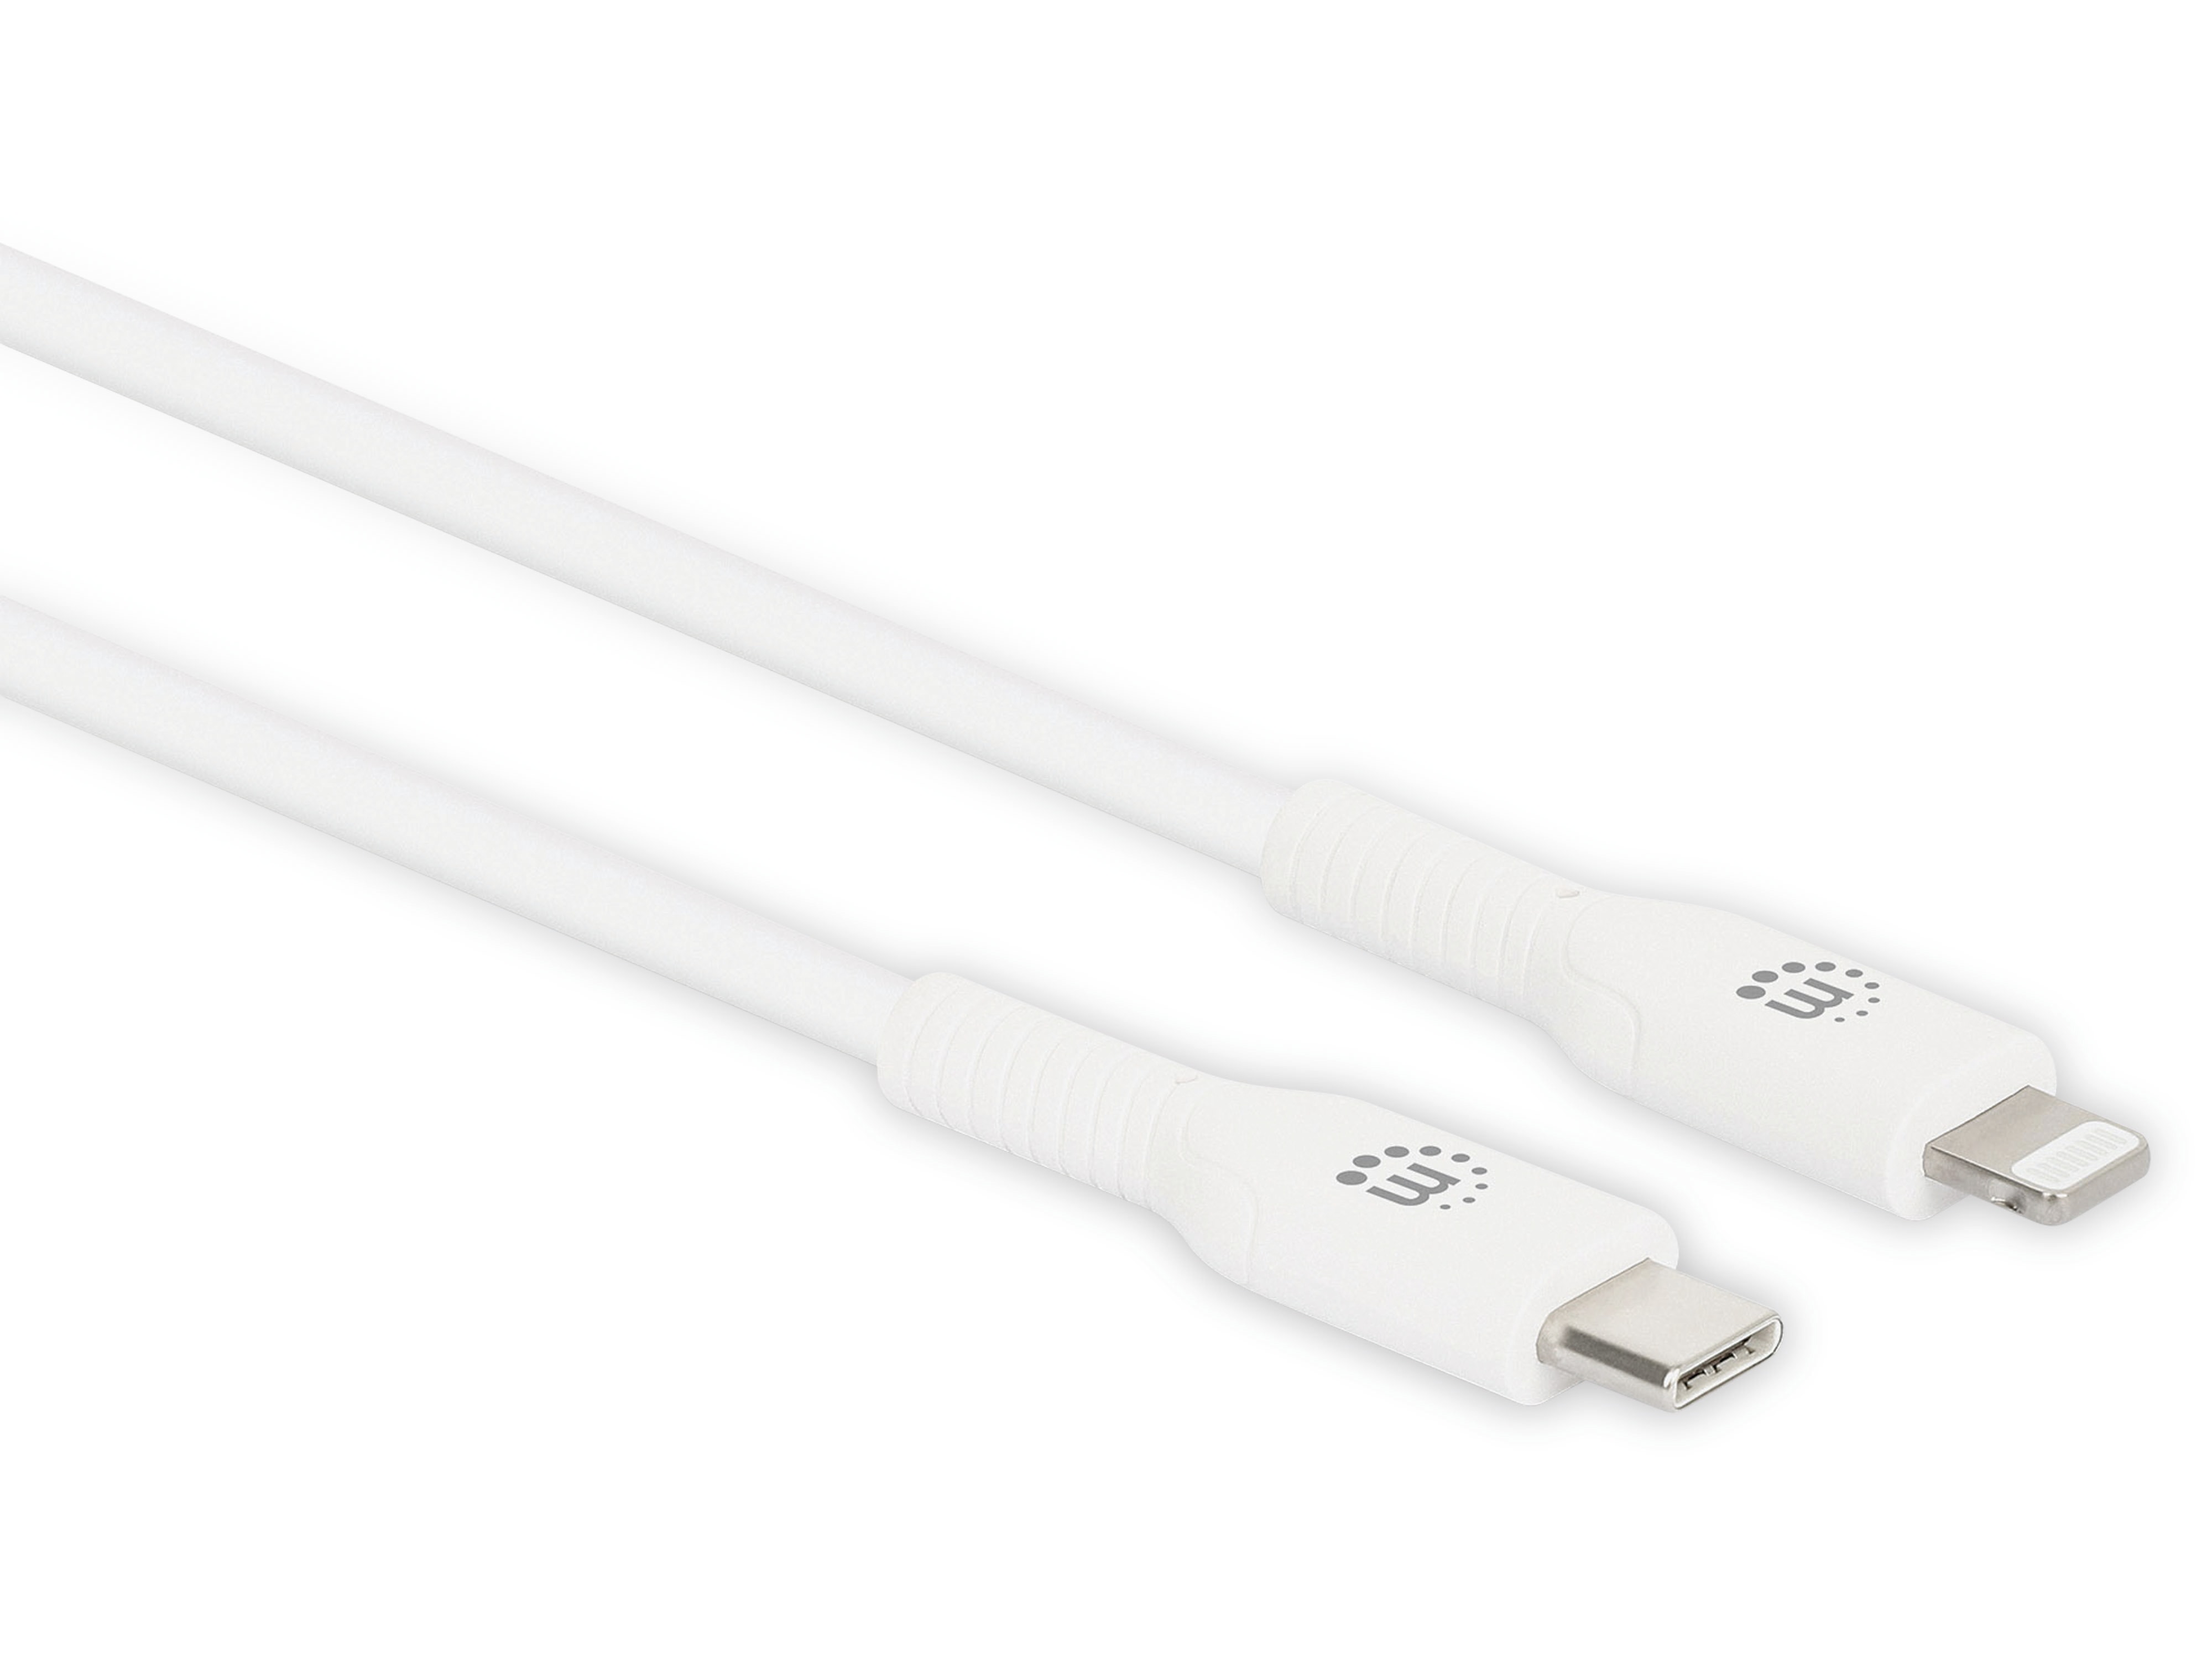 MANHATTAN USB-Daten/Ladekabel, 0,5 m, weiß